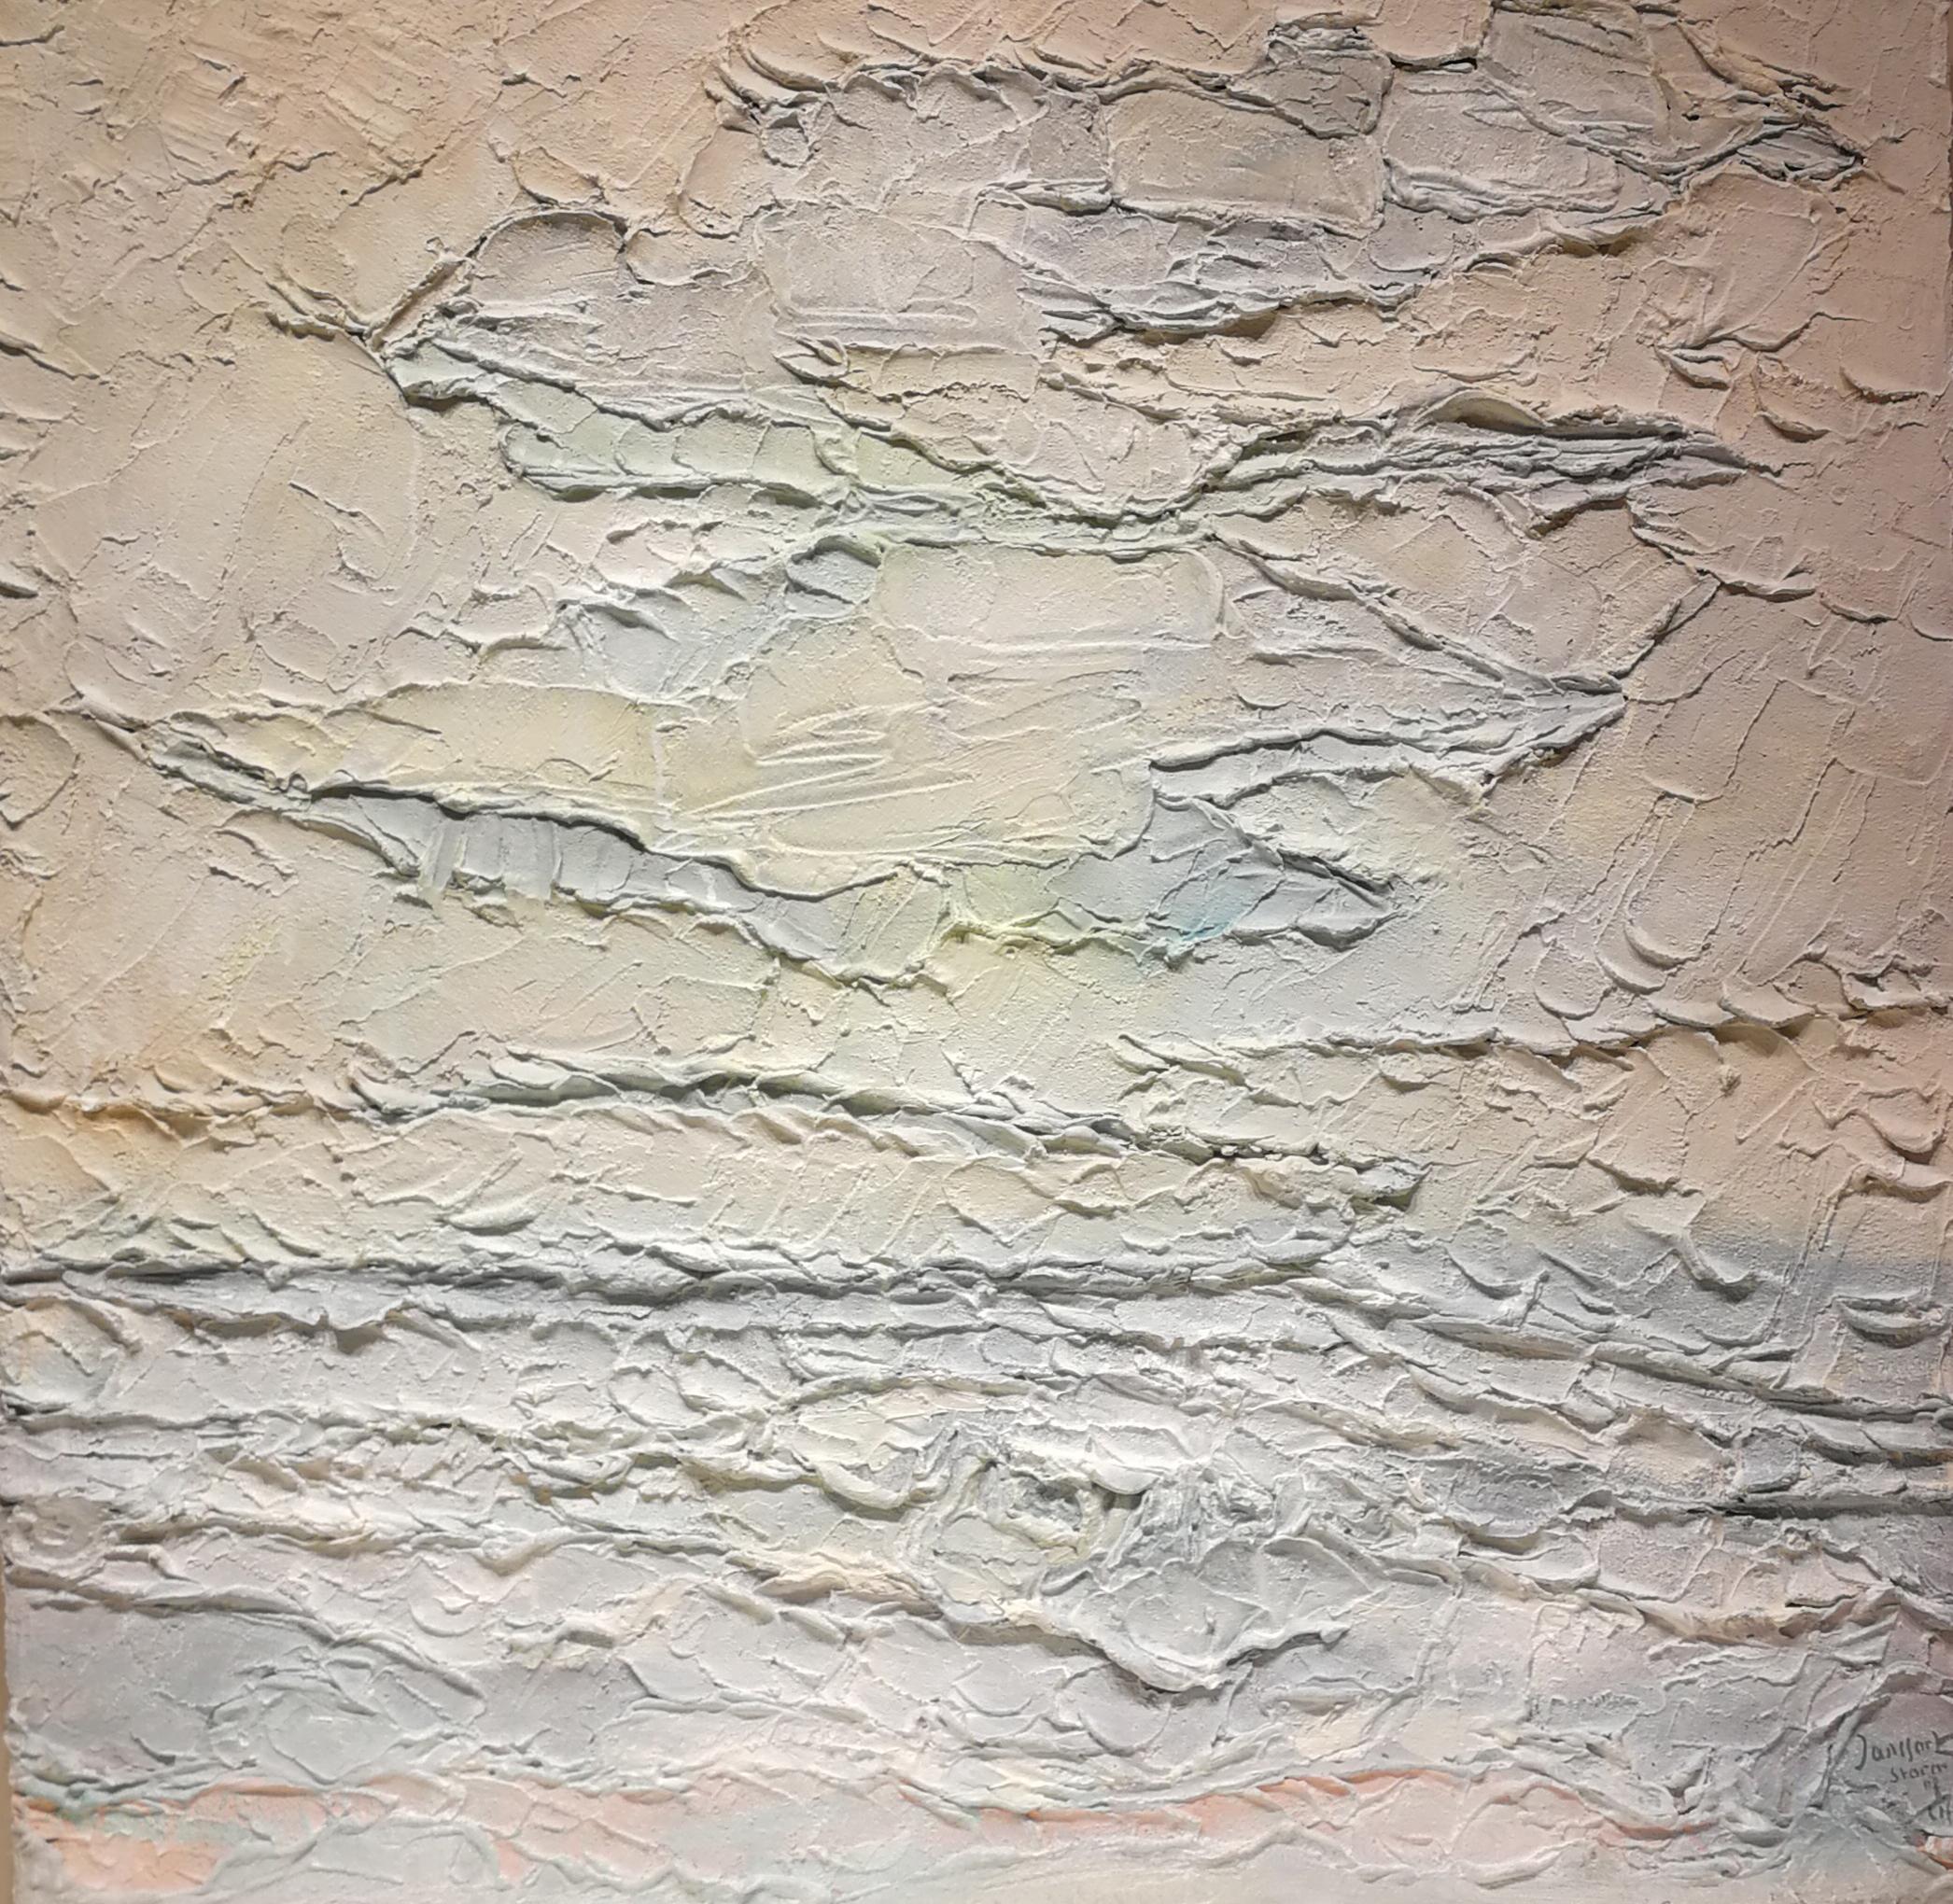 Cloudy, Janssart, Oil paint/canvas, Zero Art 